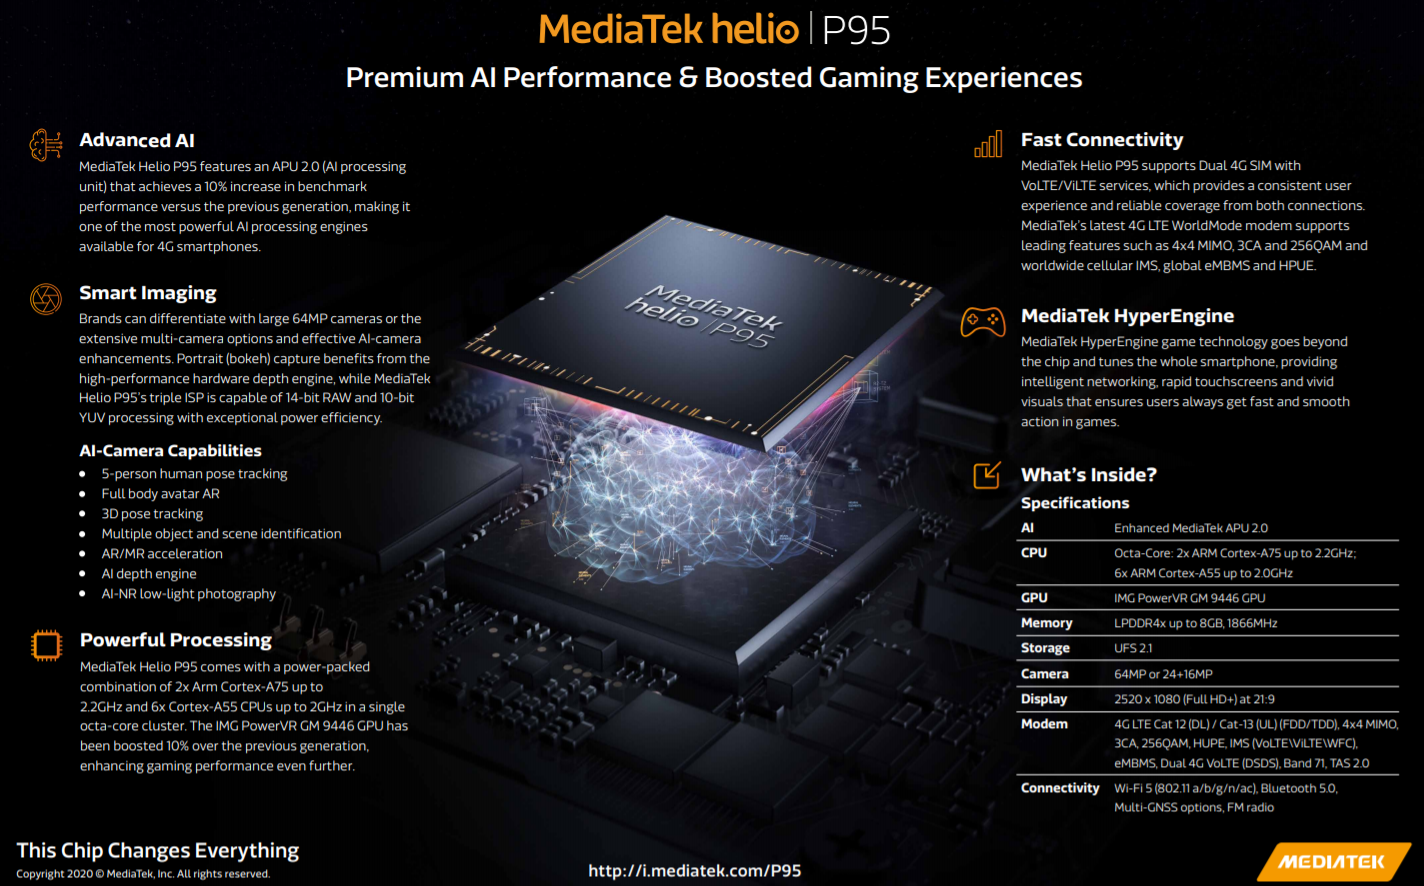 MediaTek ra mắt vi xử lý Helio P95 hướng đến phân khúc tầm trung